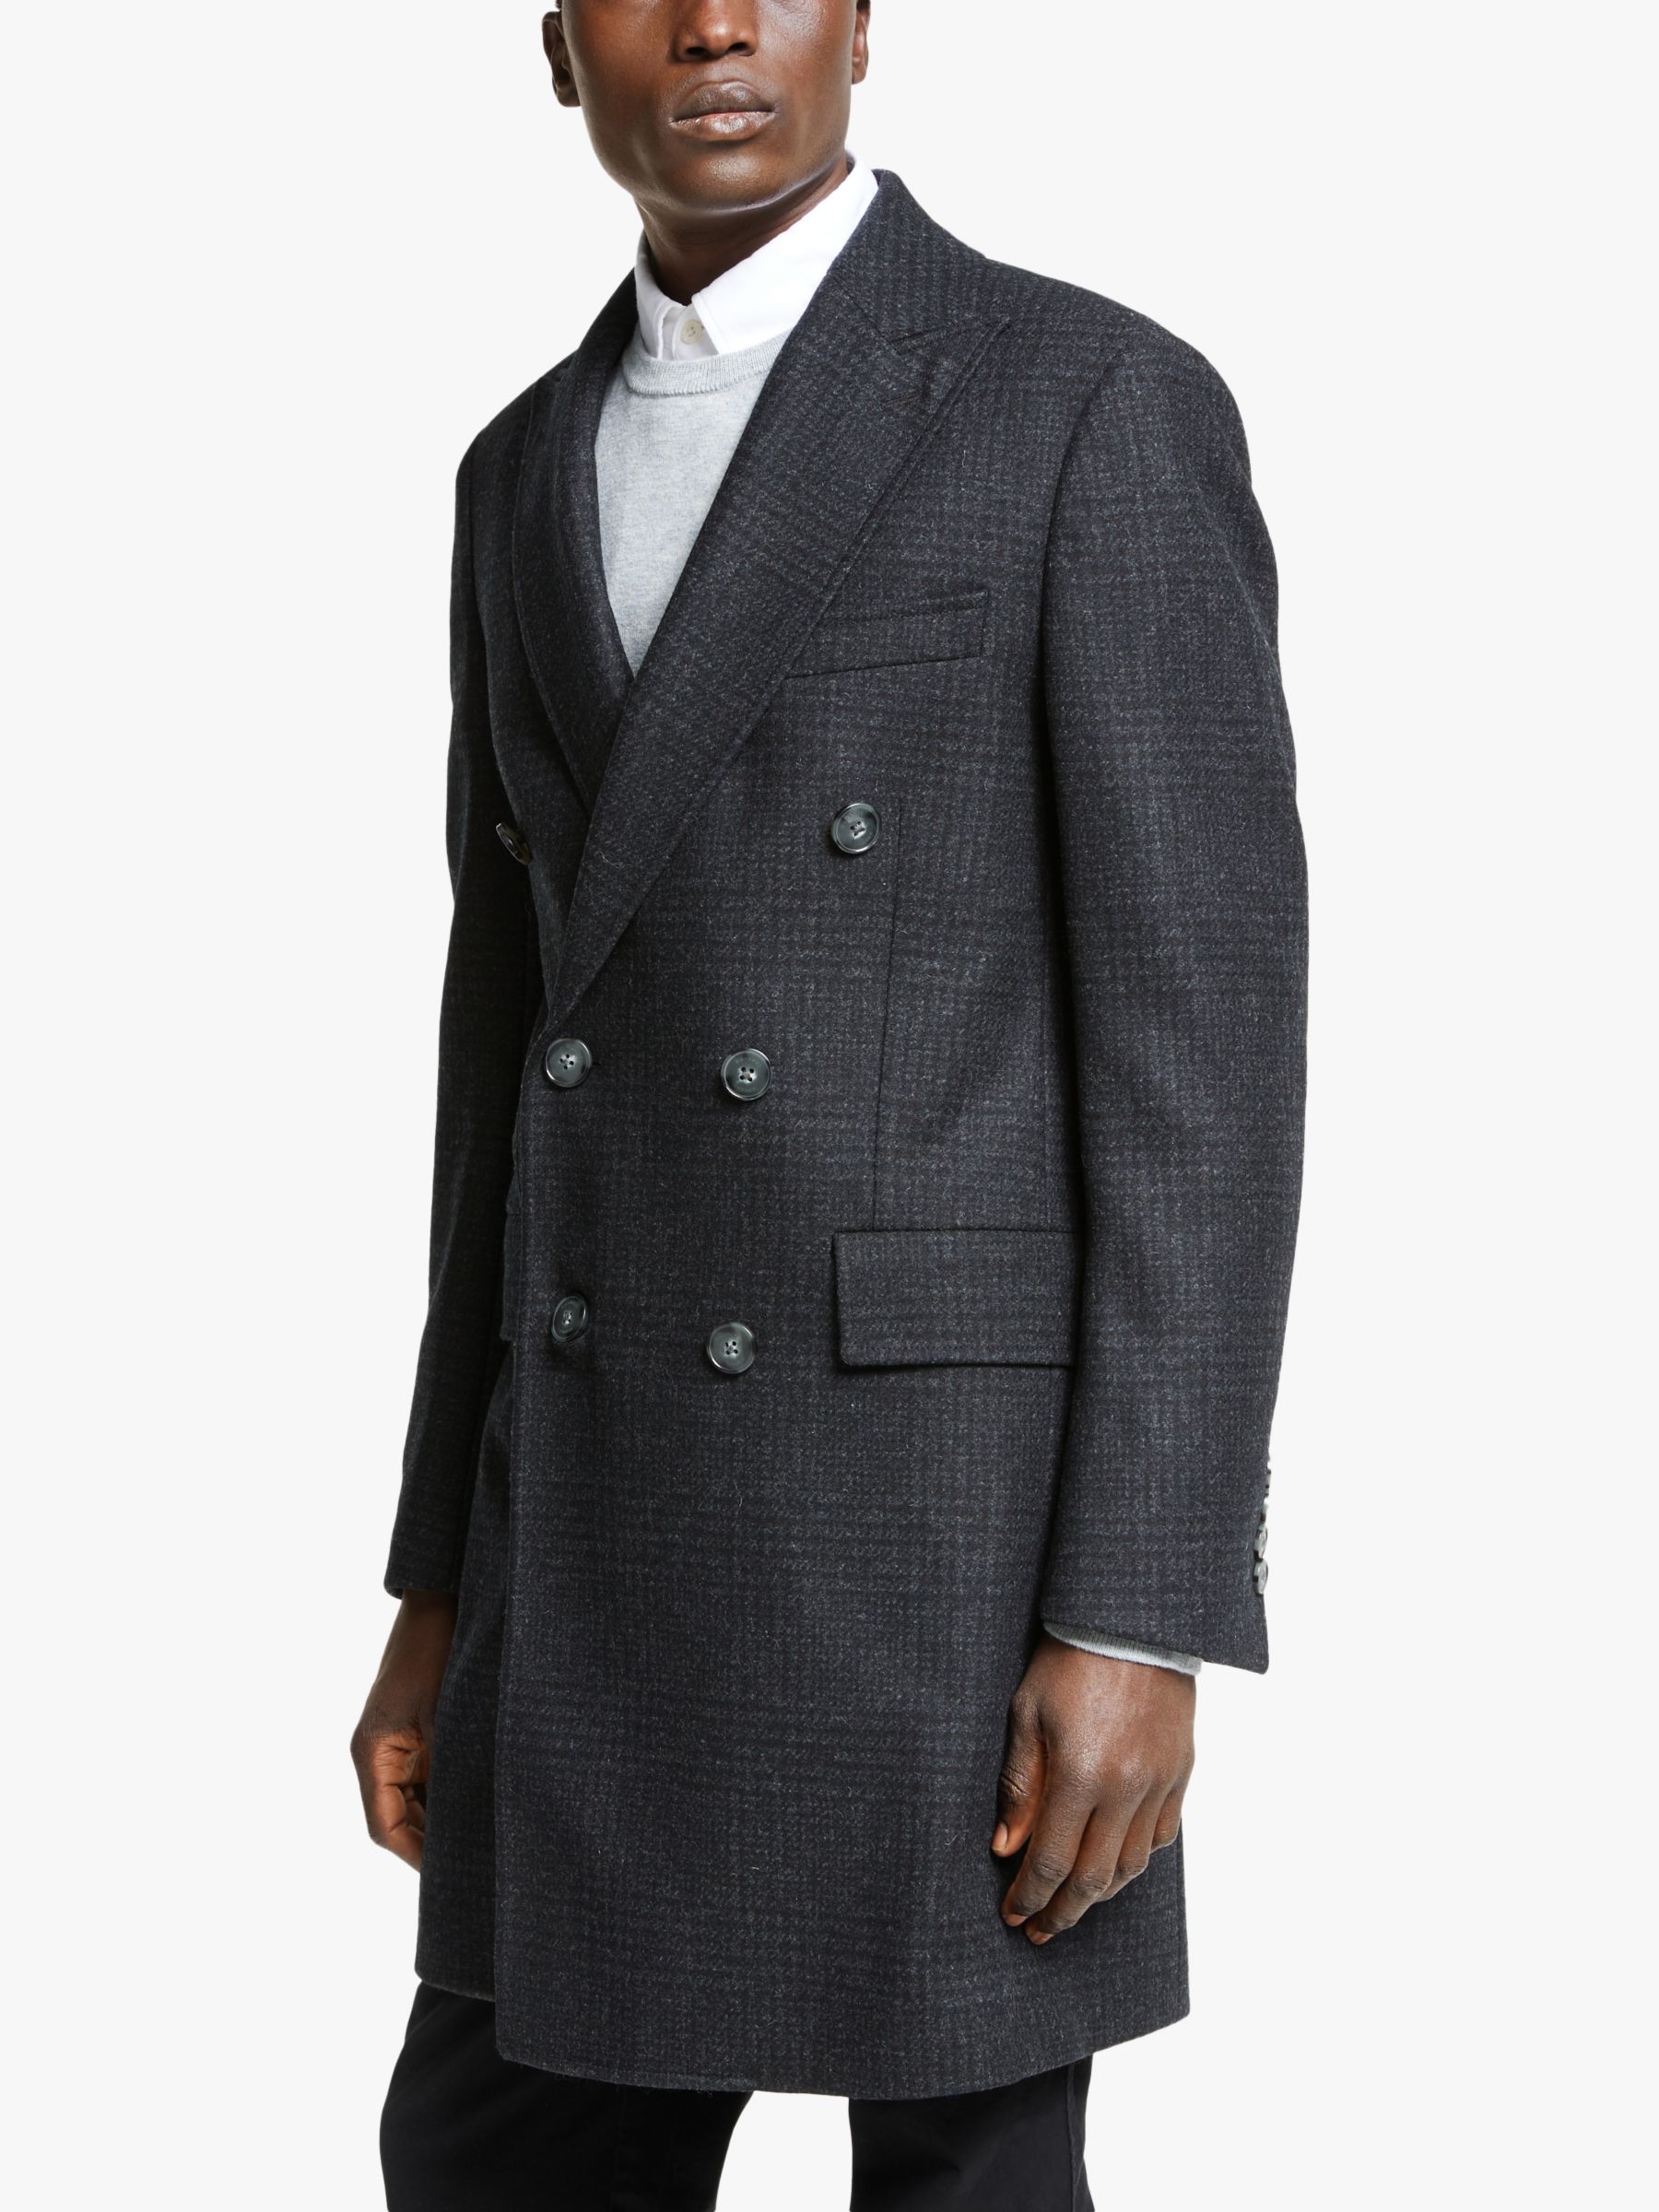 buy overcoat online